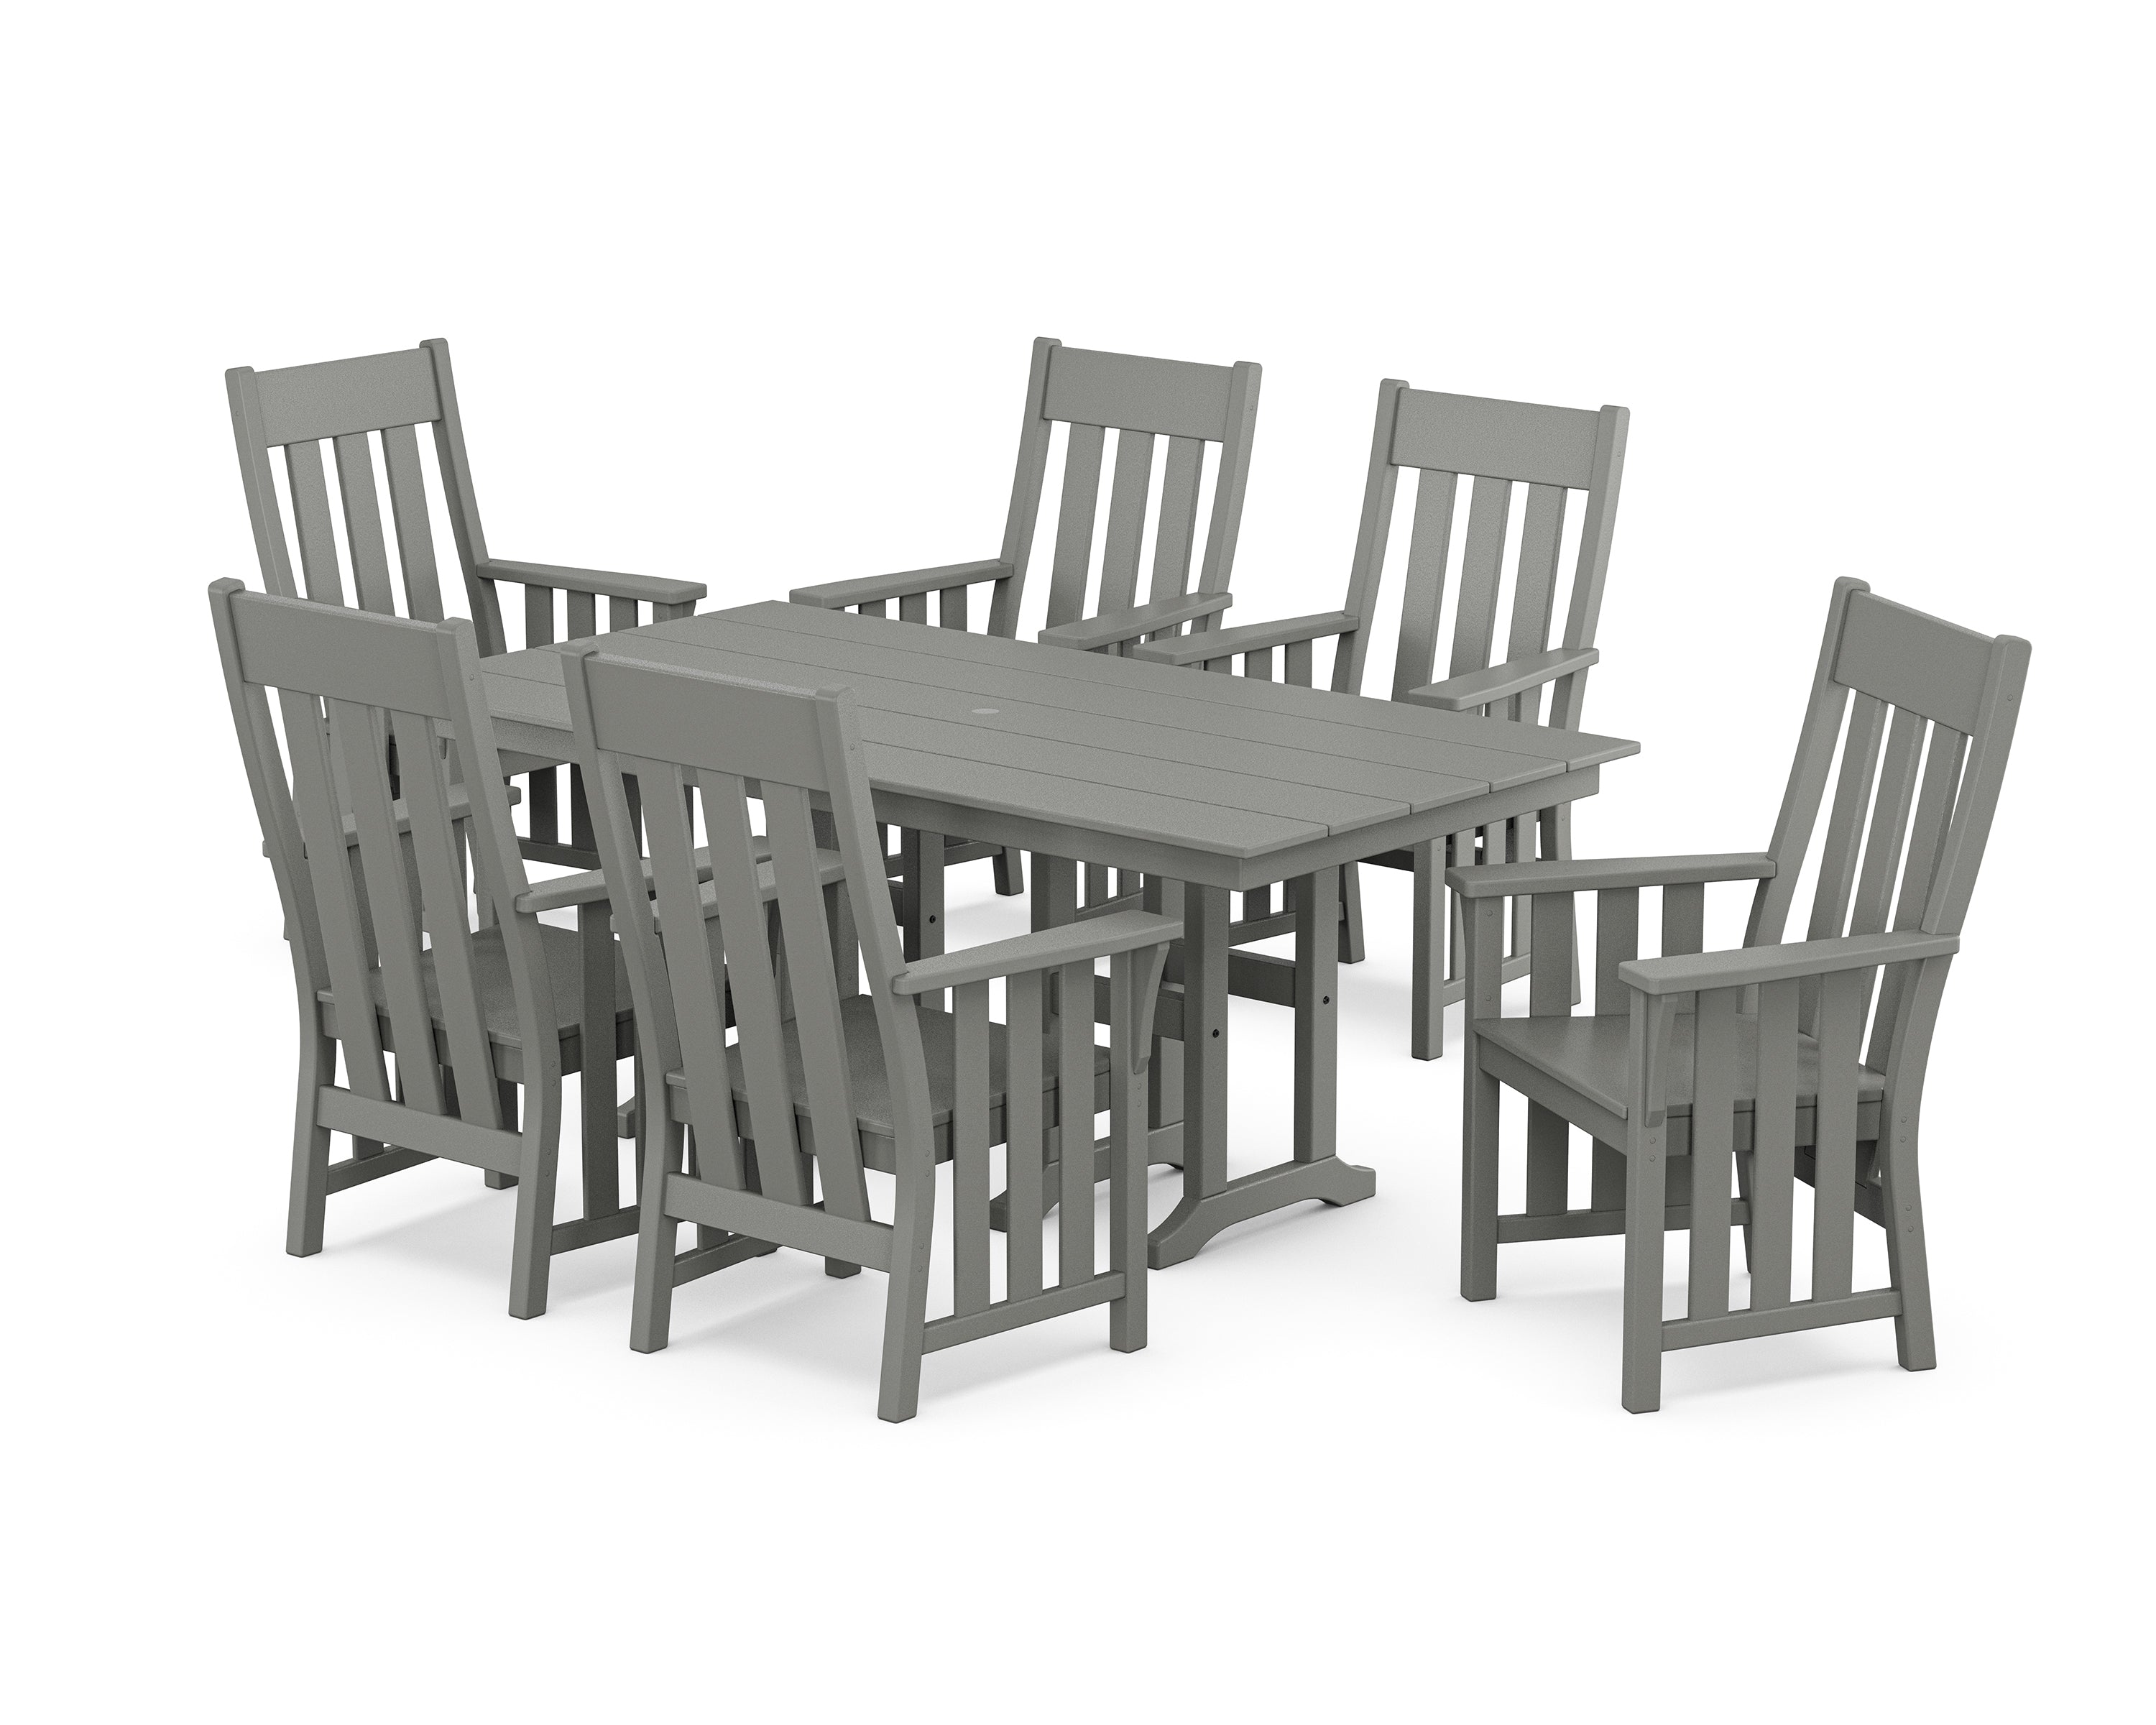 Martha Stewart by POLYWOOD® Acadia Arm Chair 7-Piece Farmhouse Dining Set in Slate Grey